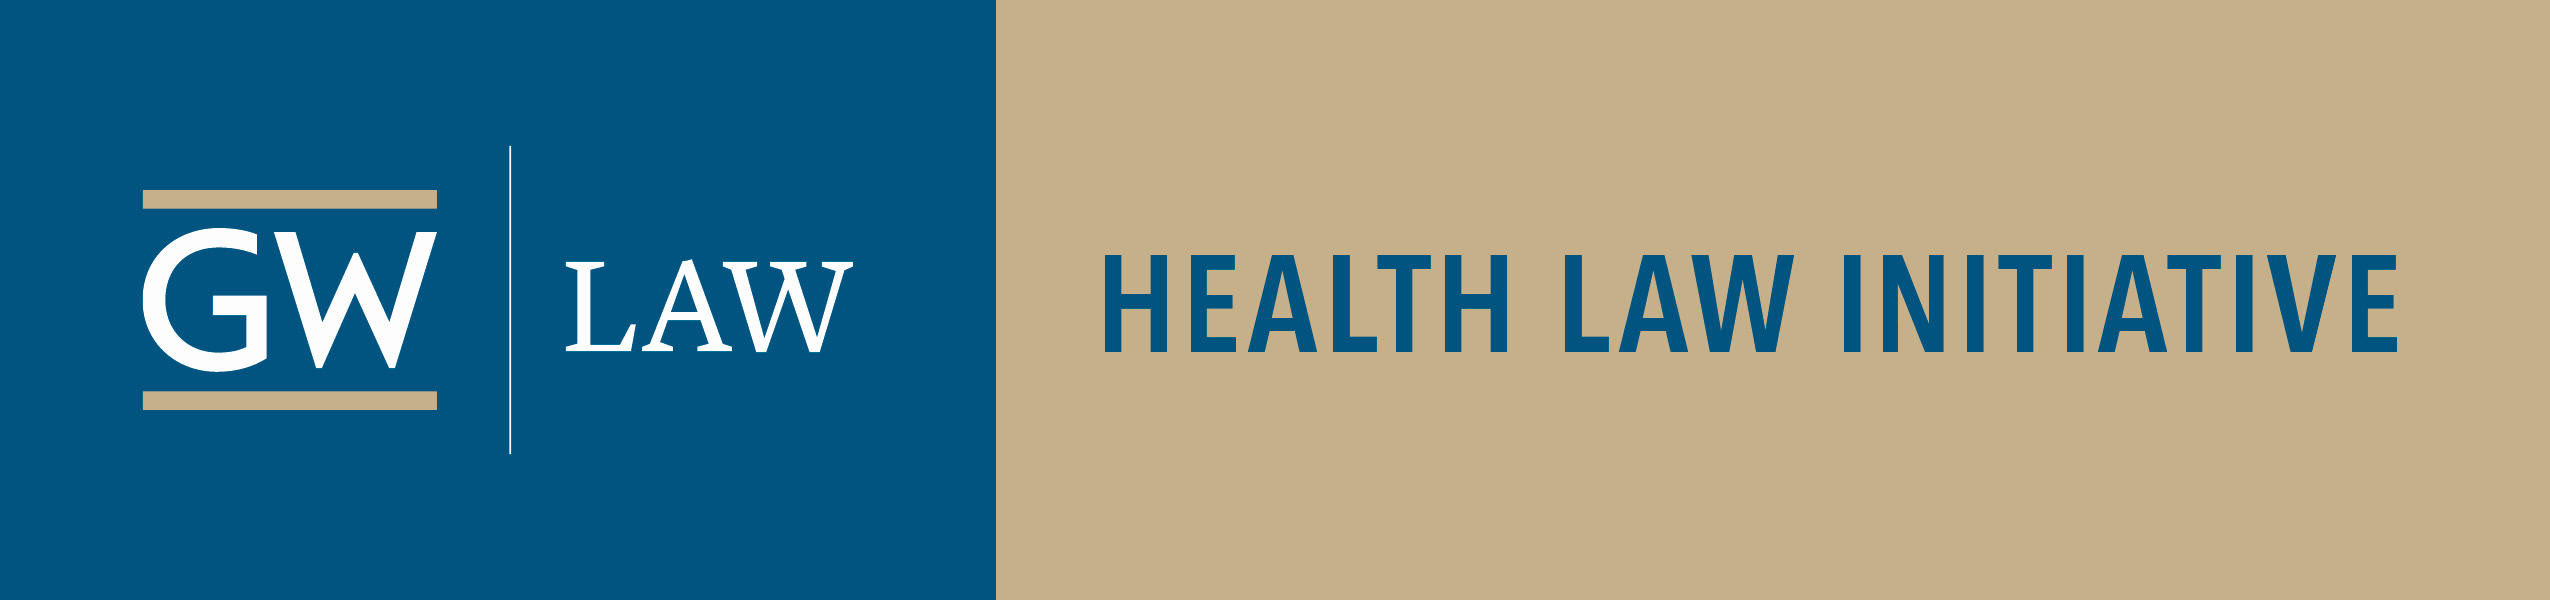 GW health law initiative logo